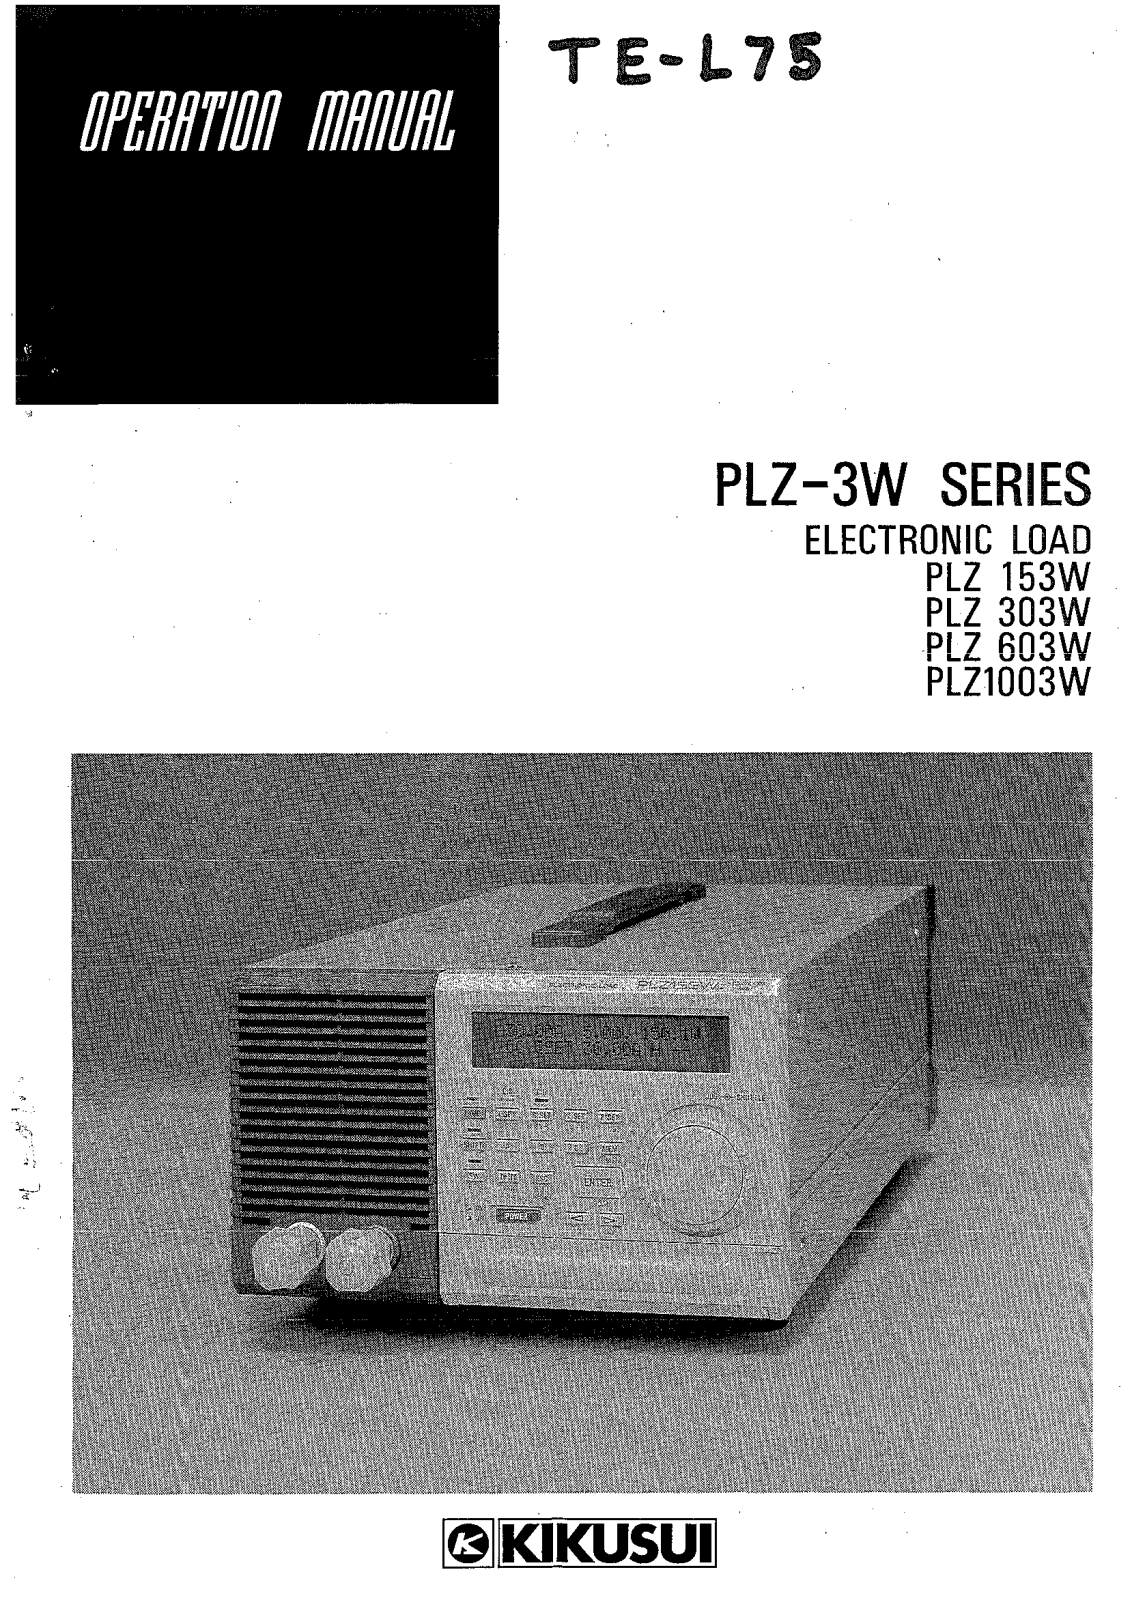 Kikusui Electronics Corporation PLZ 1003W, PLZ 153W, PLZ 303W, PLZ 603W User Manual